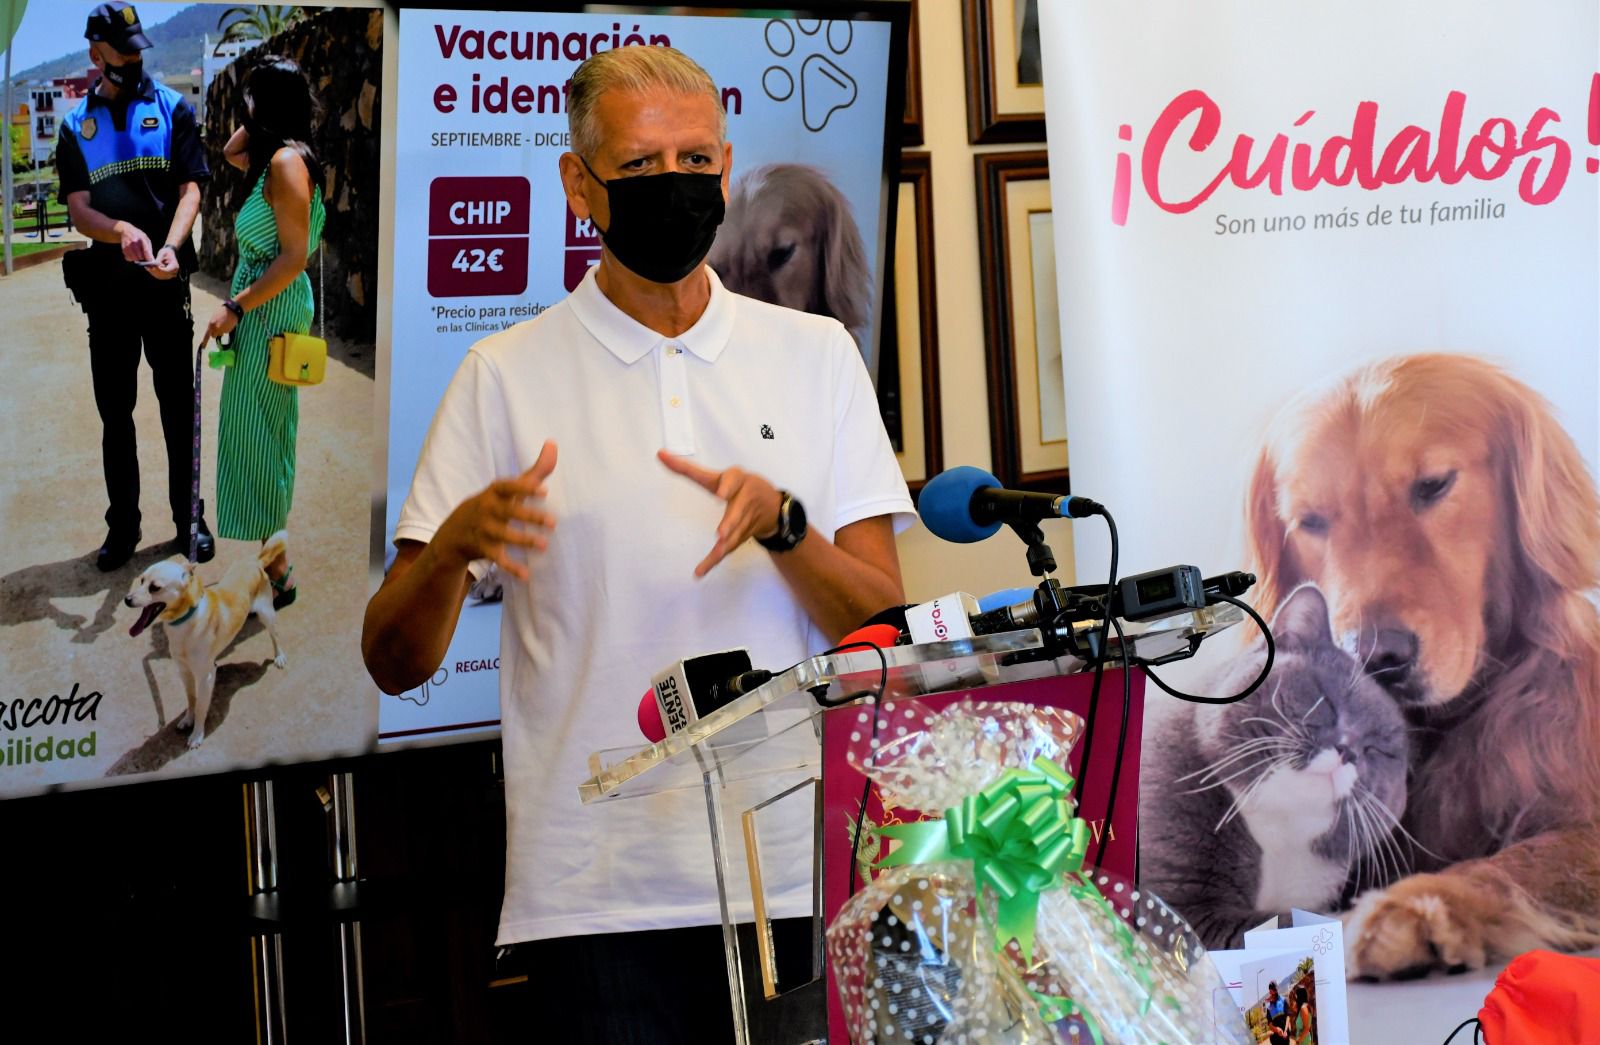 De septiembre a diciembre las clínicas veterinarias de la Villa colaborarán con la campaña de vacunación e identificación. Los usuarios recibirán regalos y participarán en un sorteo La institución local quiere evitar también el abandono de animales